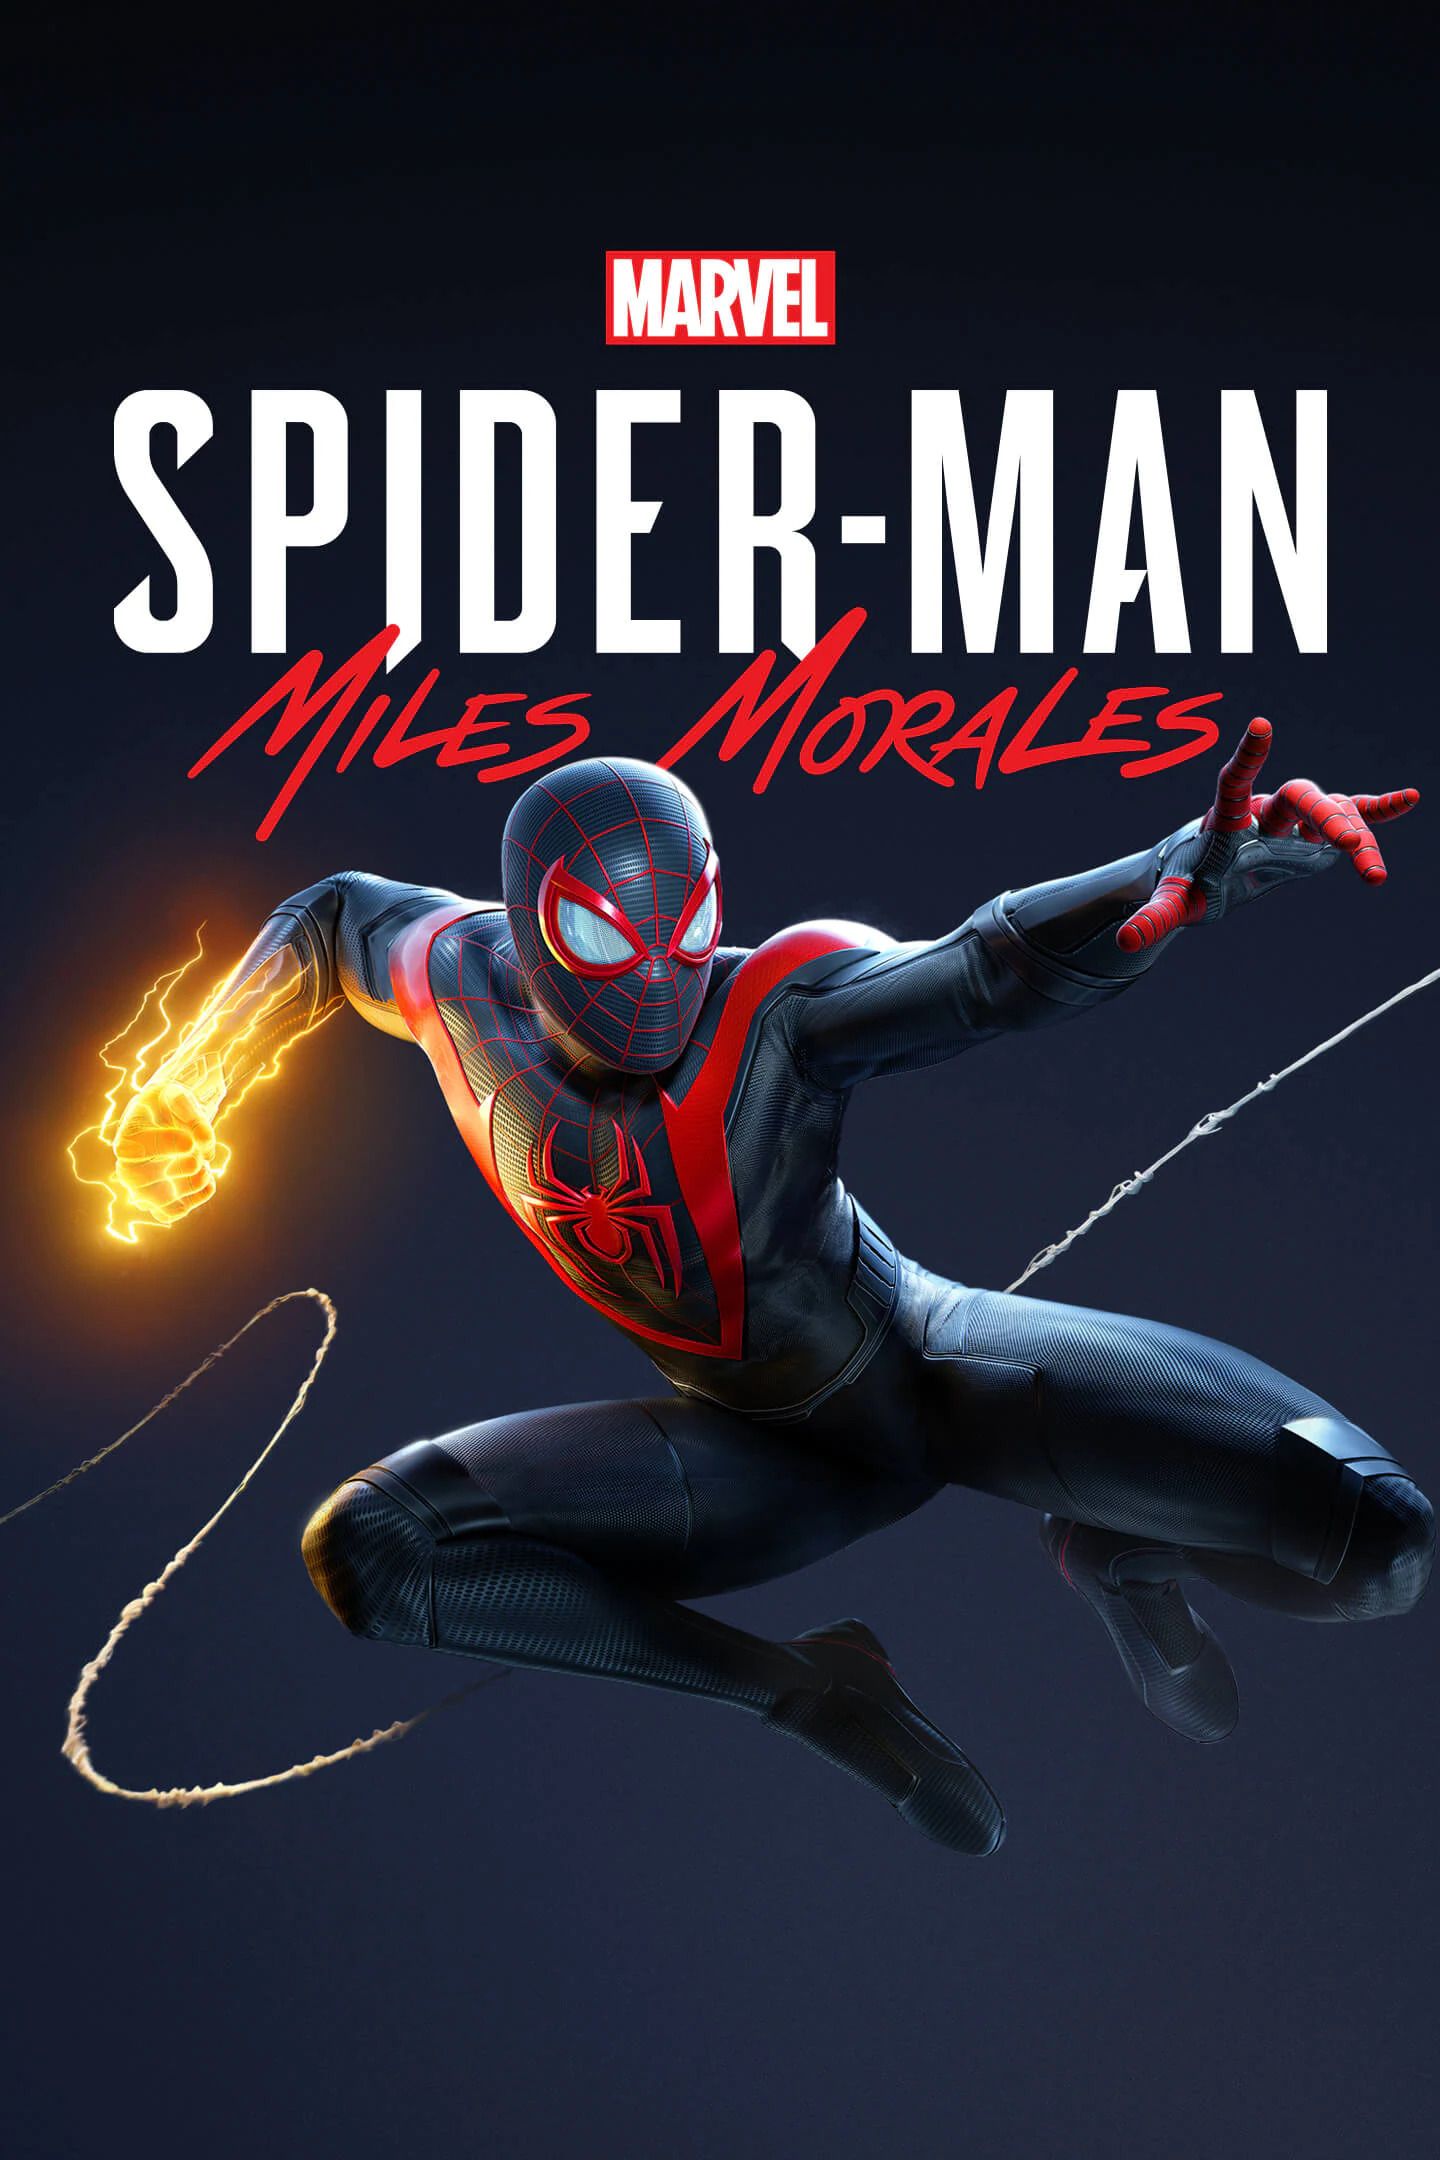 Spiderman - Miles Morales Steam Key Global